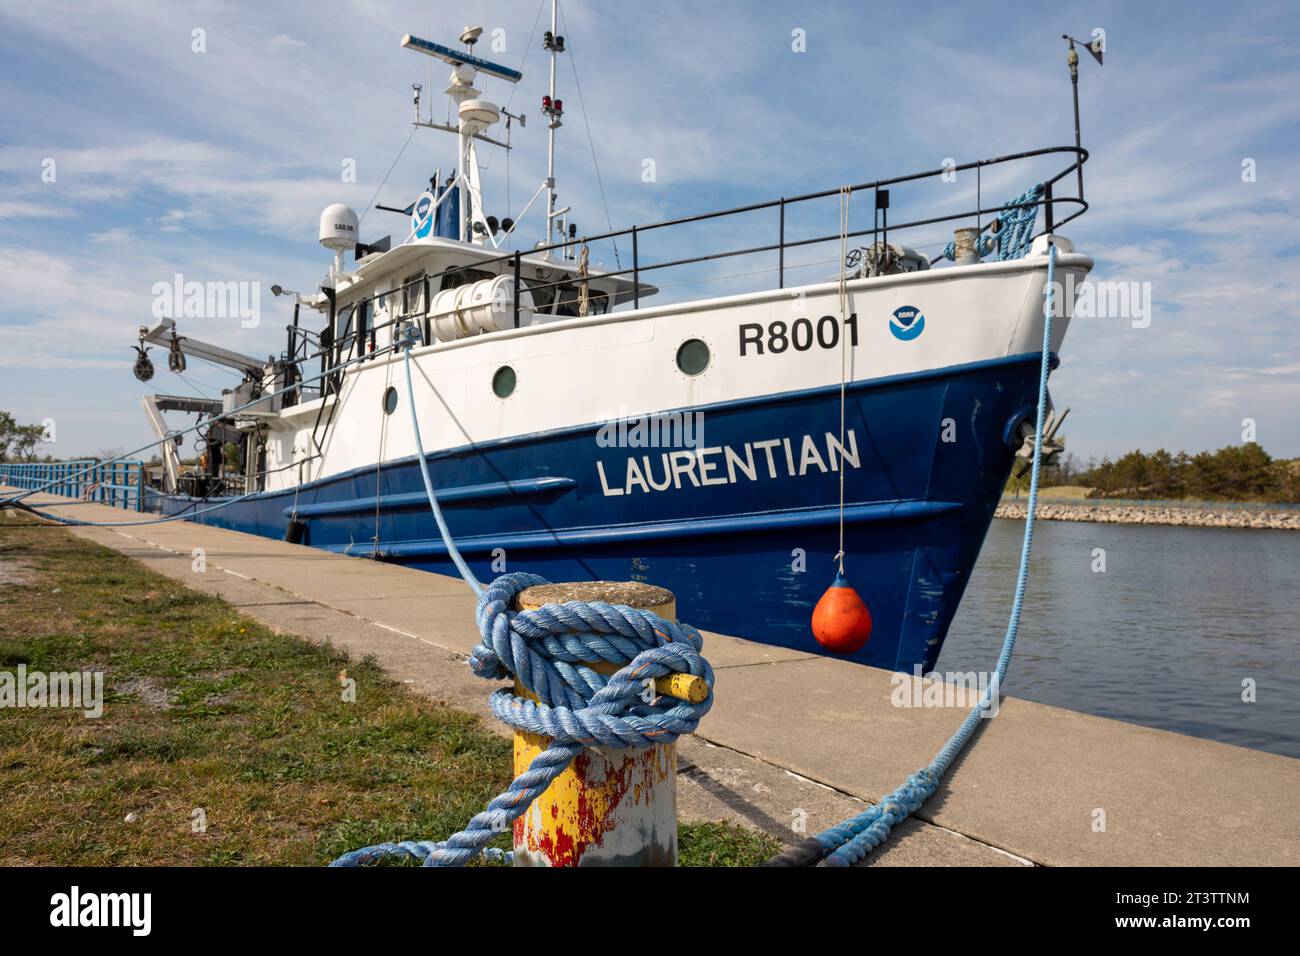 Muskegon, Michigan - El Laurentian, un buque de investigación ambiental de los Grandes Lagos operado por la Administración Nacional Oceánica y Atmosférica (NOAA Foto de stock